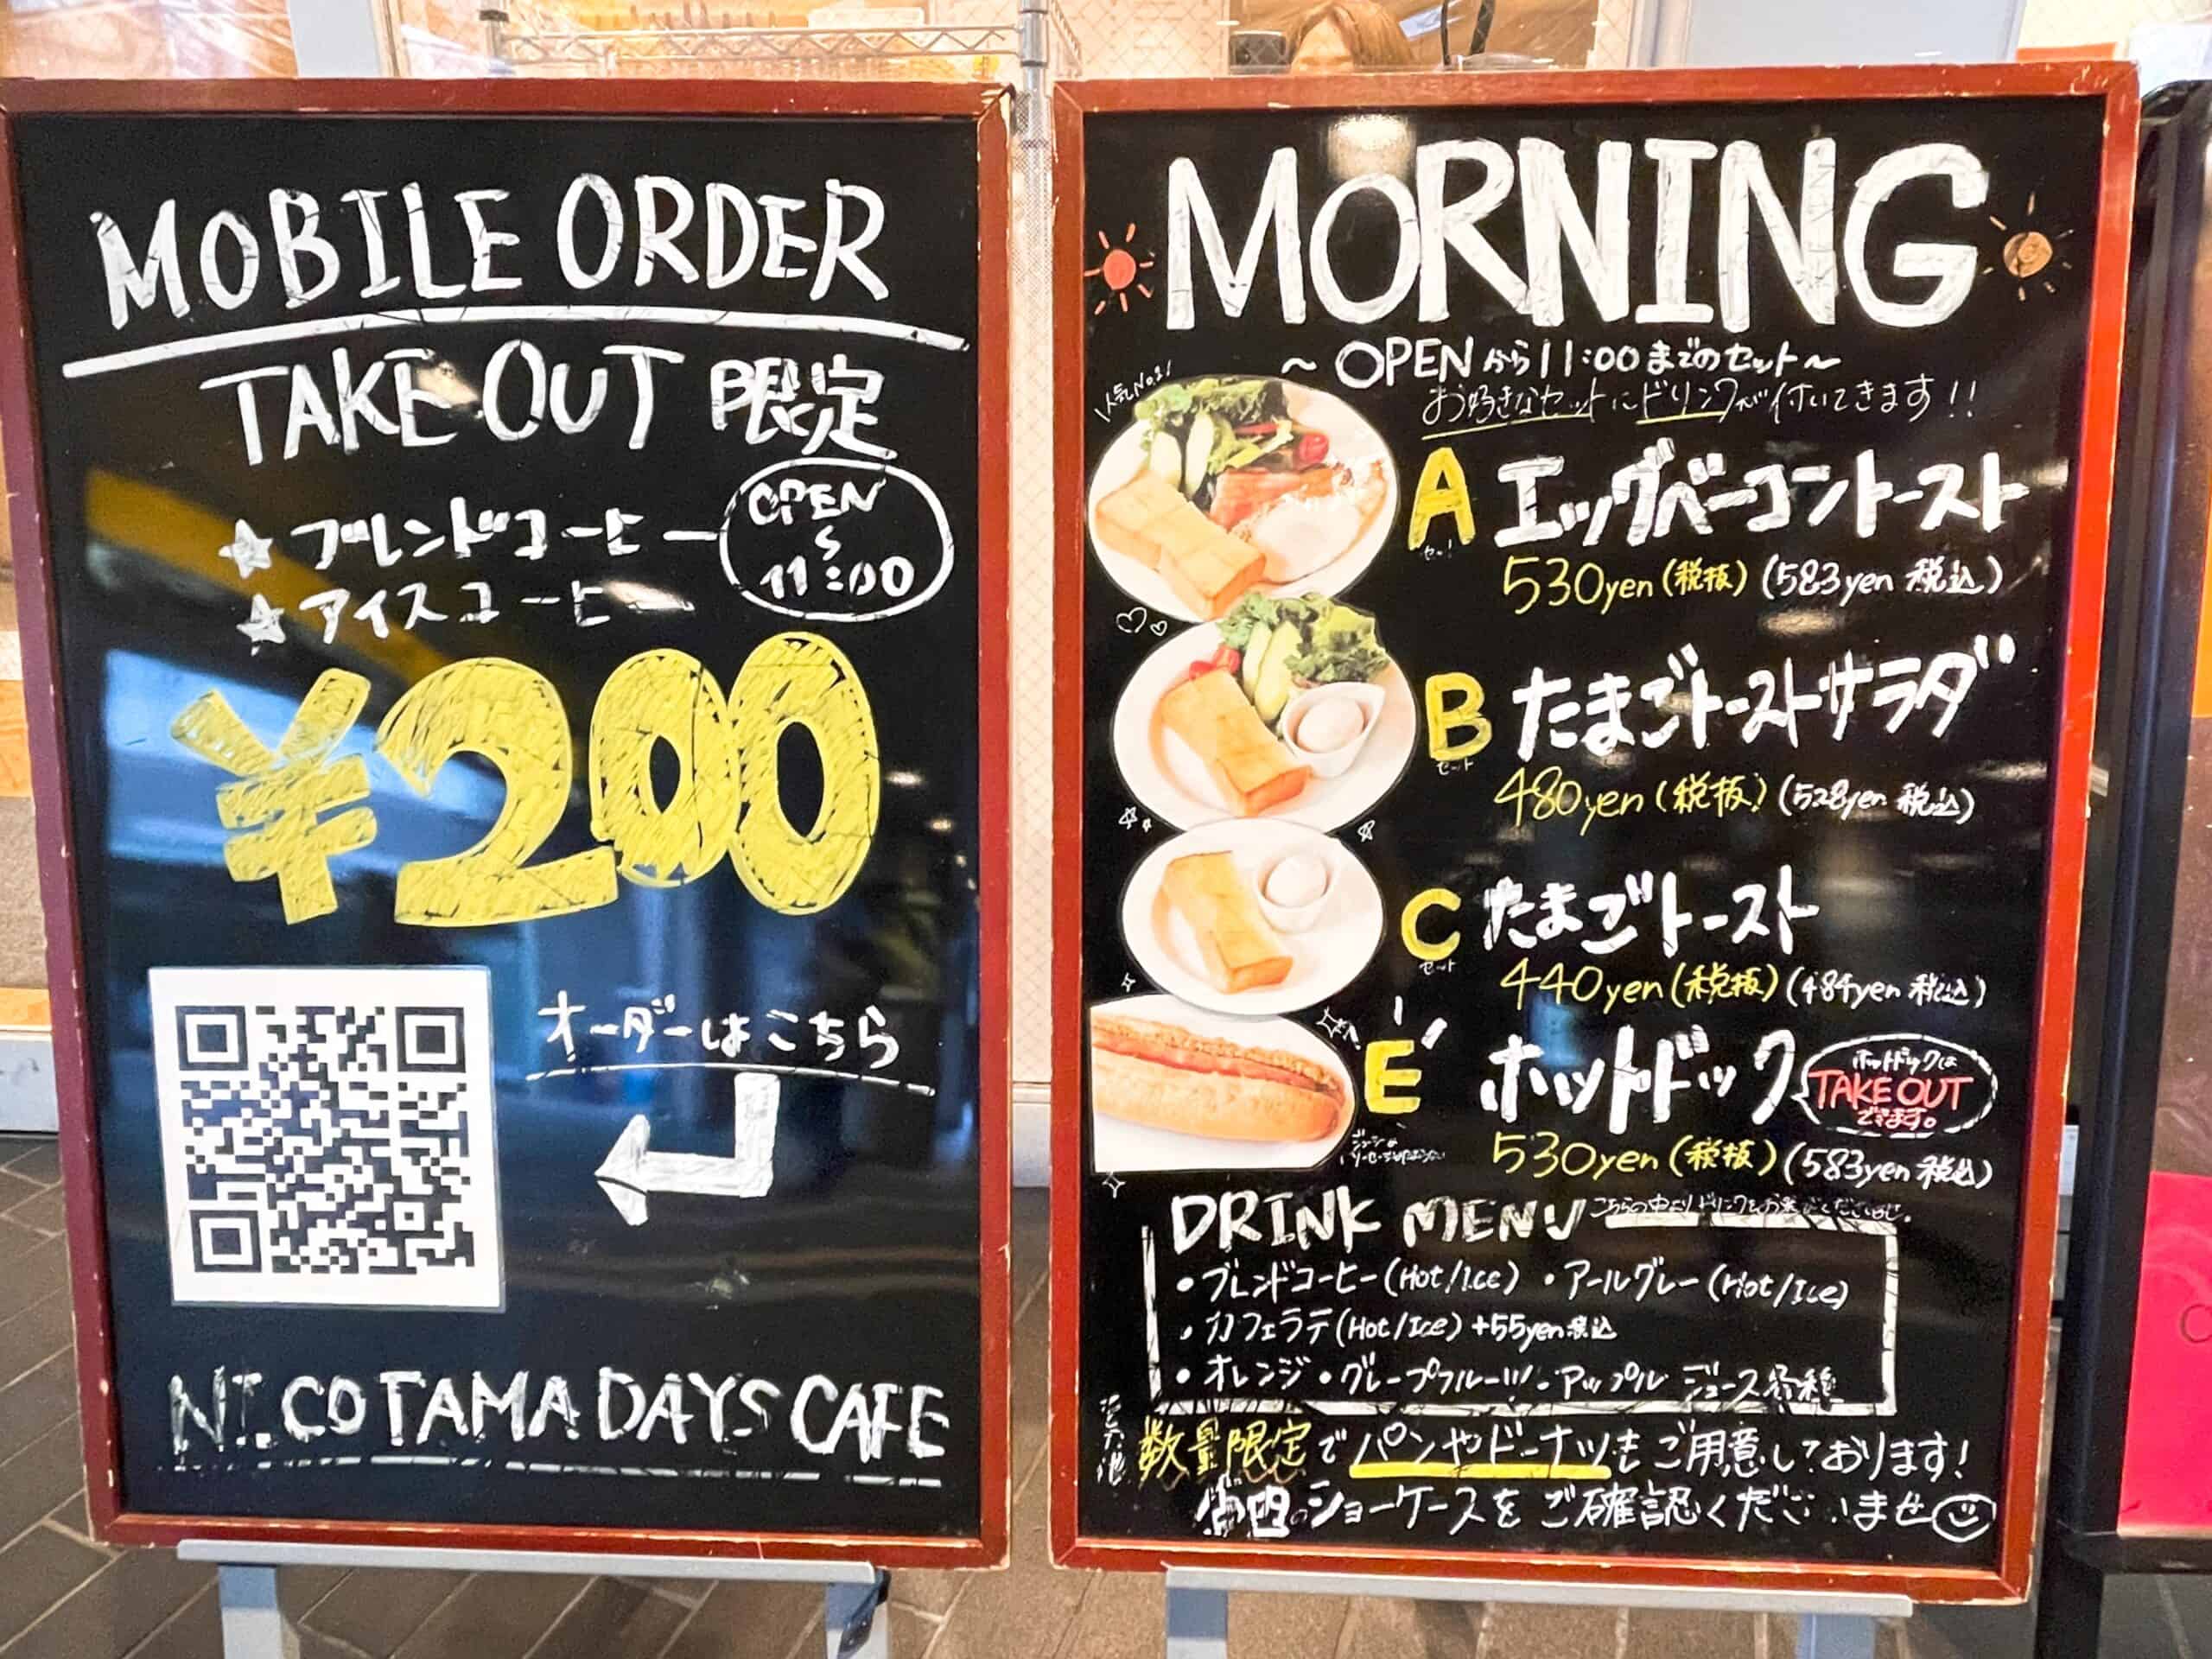 二子玉川 NICOTAMA DAYS CAFE (ニコタマデイズカフェ)のモーニングメニュー